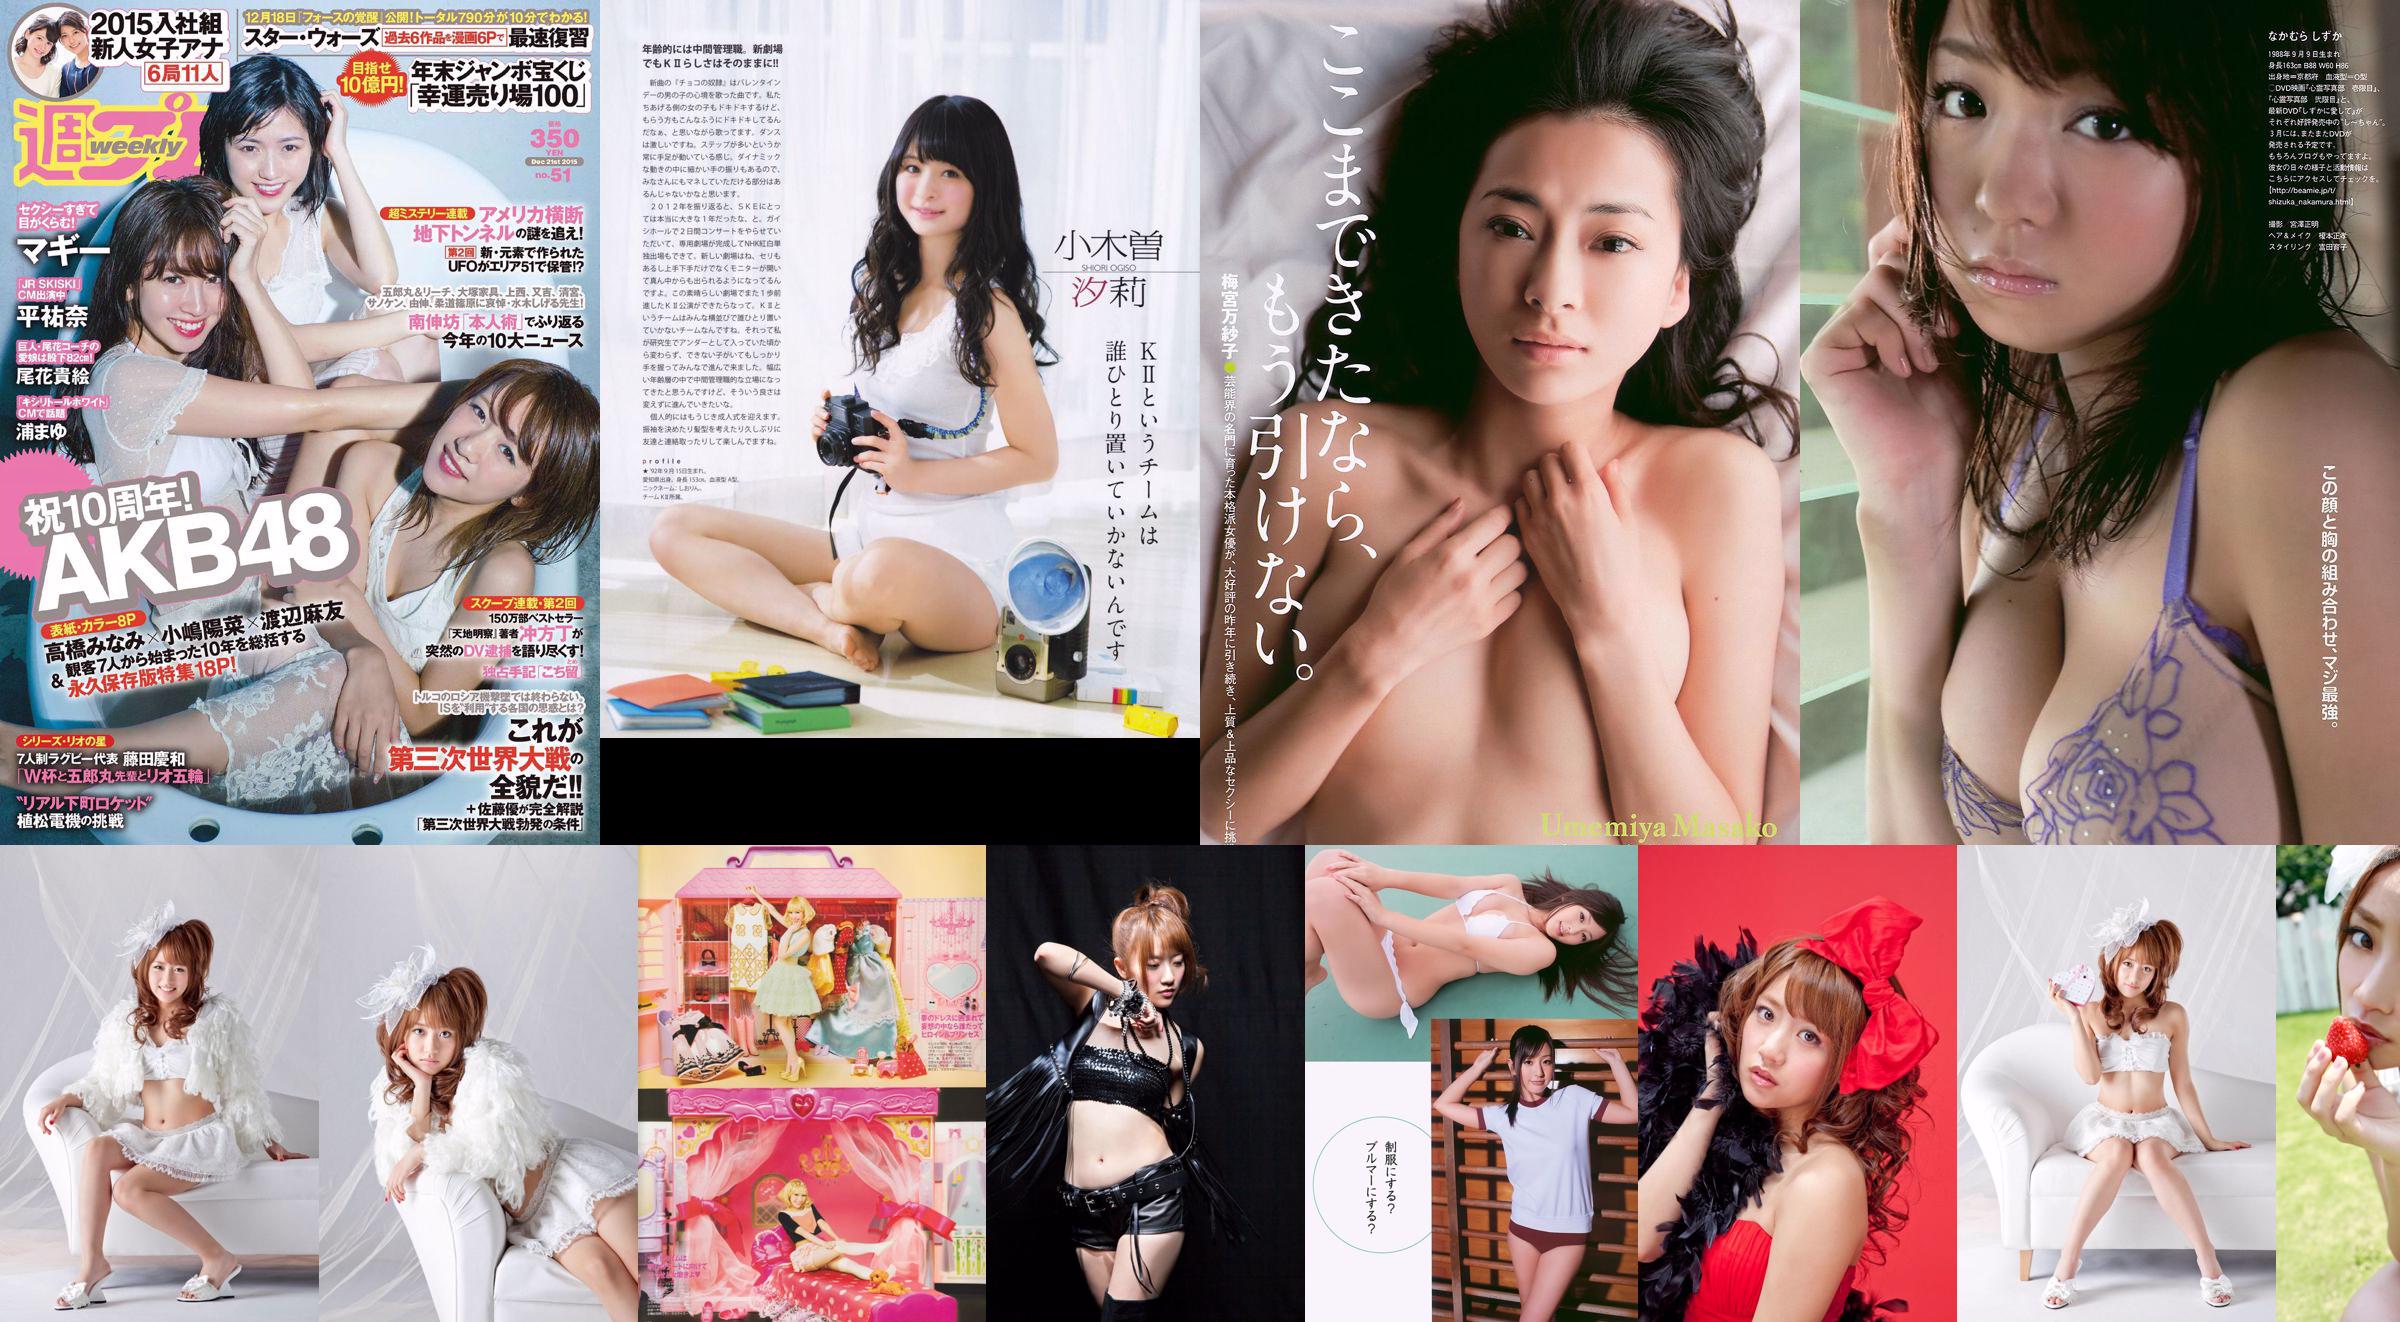 Minami Takahashi Haruna Kojima Mayu Watanabe Maggie Takae Obana Yuna Taira Mayu Ura Mitadera En [Weekly Playboy] 2015 No.51 Ảnh No.013702 Trang 1